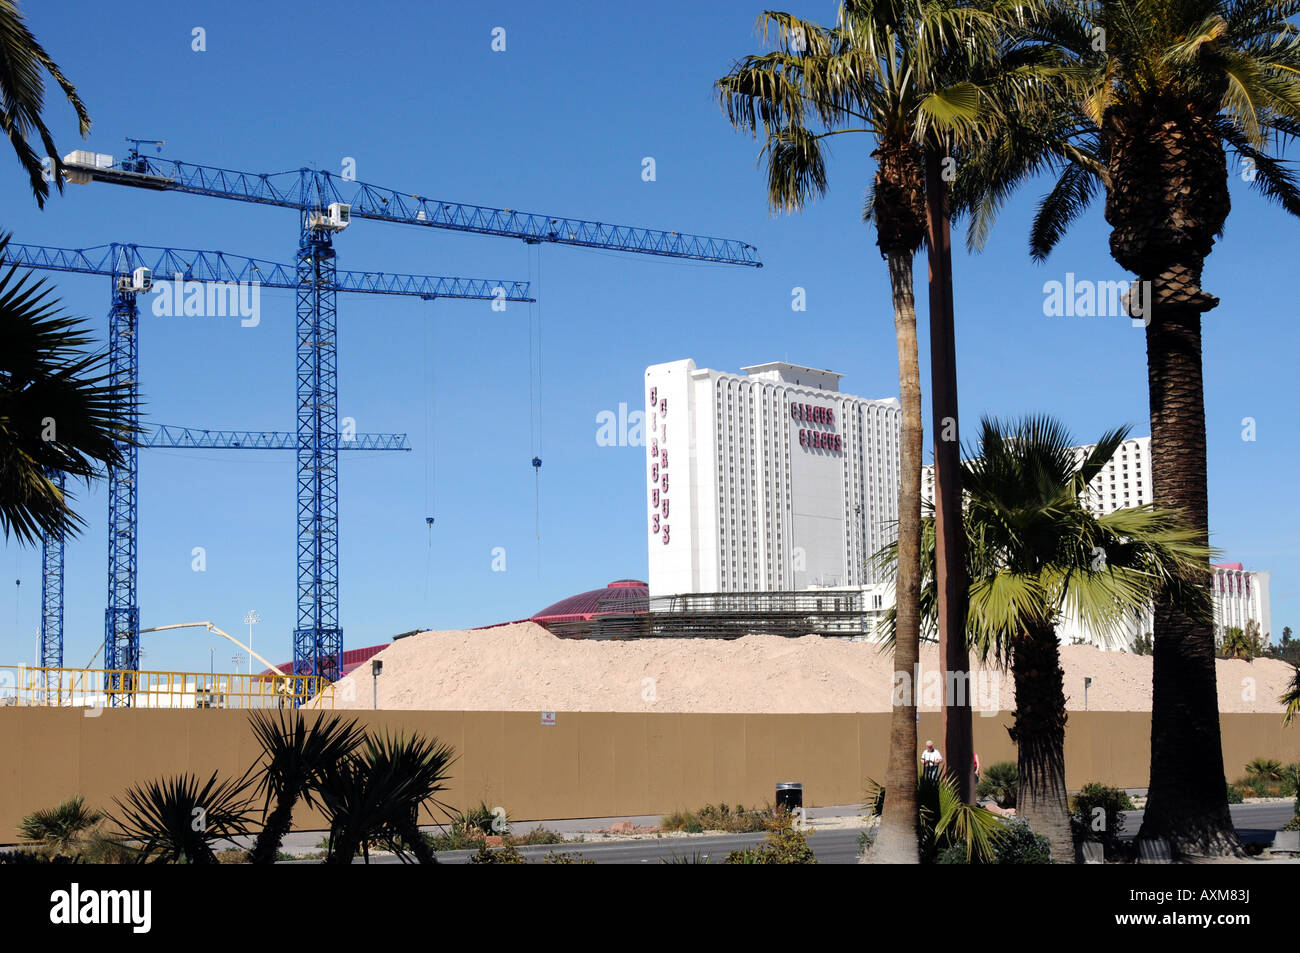 Las Vegas vecchia e nuova costruzione di gru e un vecchio hotel Foto Stock